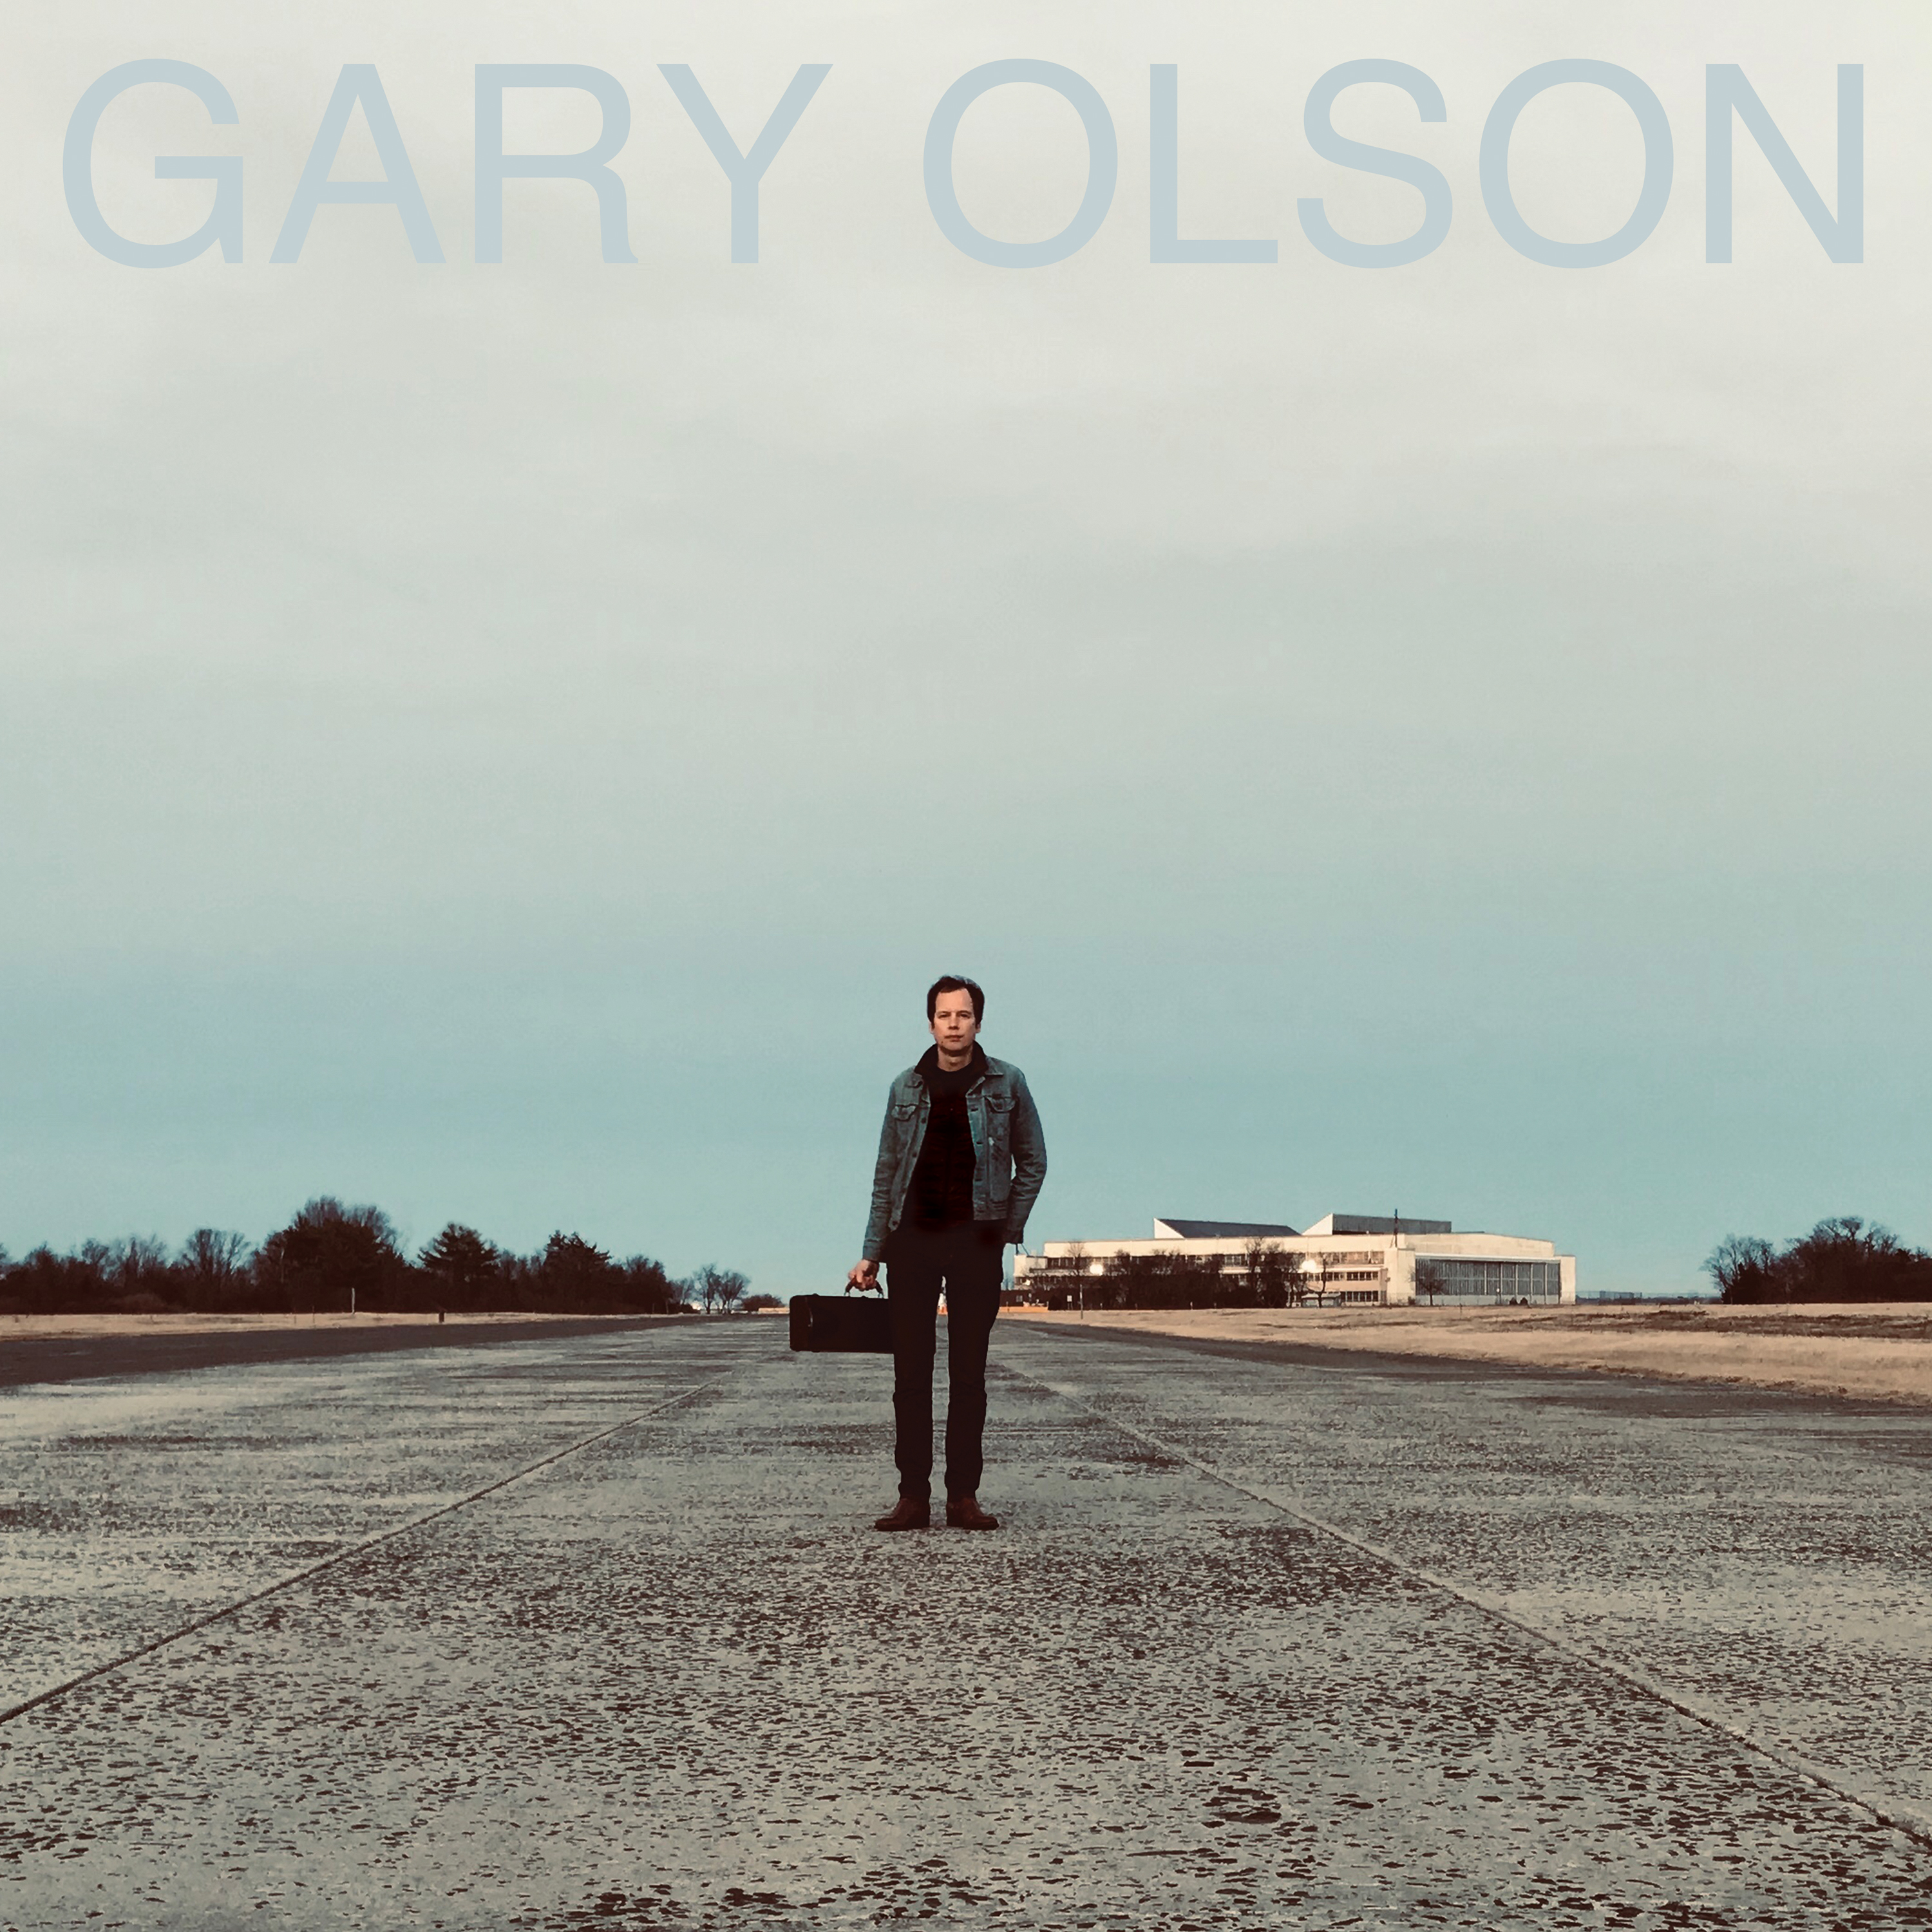 Gary Olson - Gary Olson